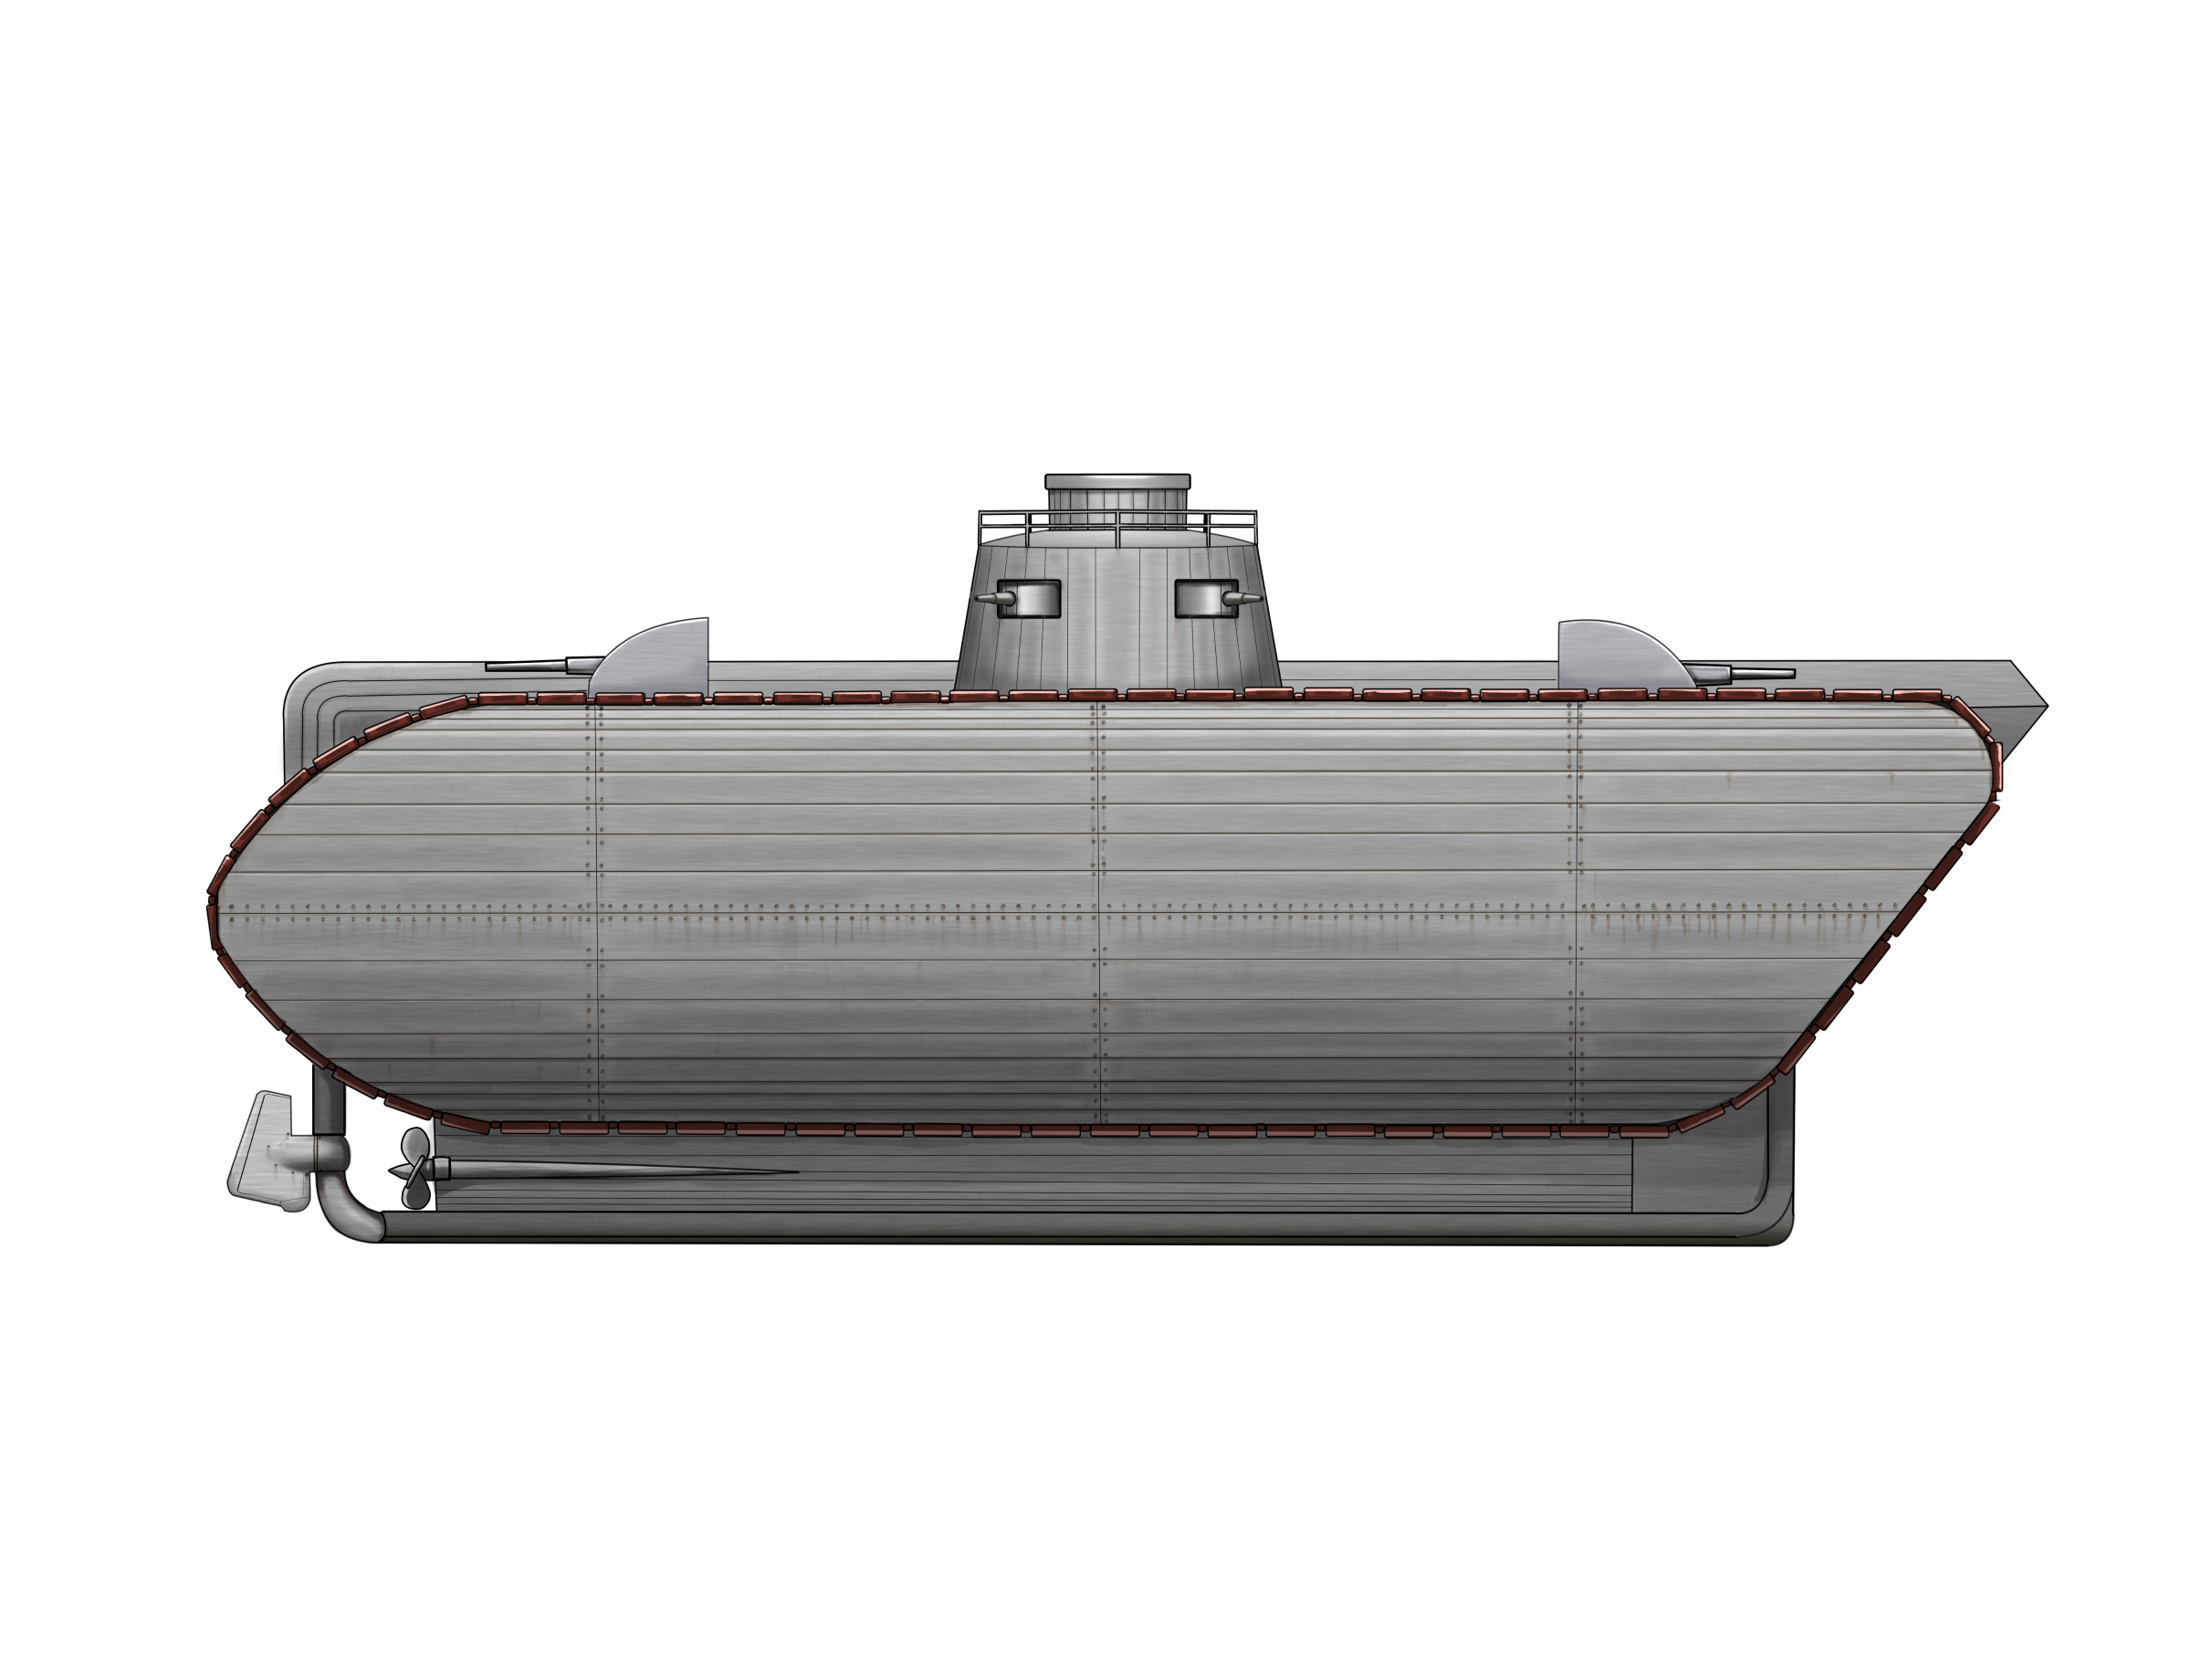 Biemmi Naval Tank